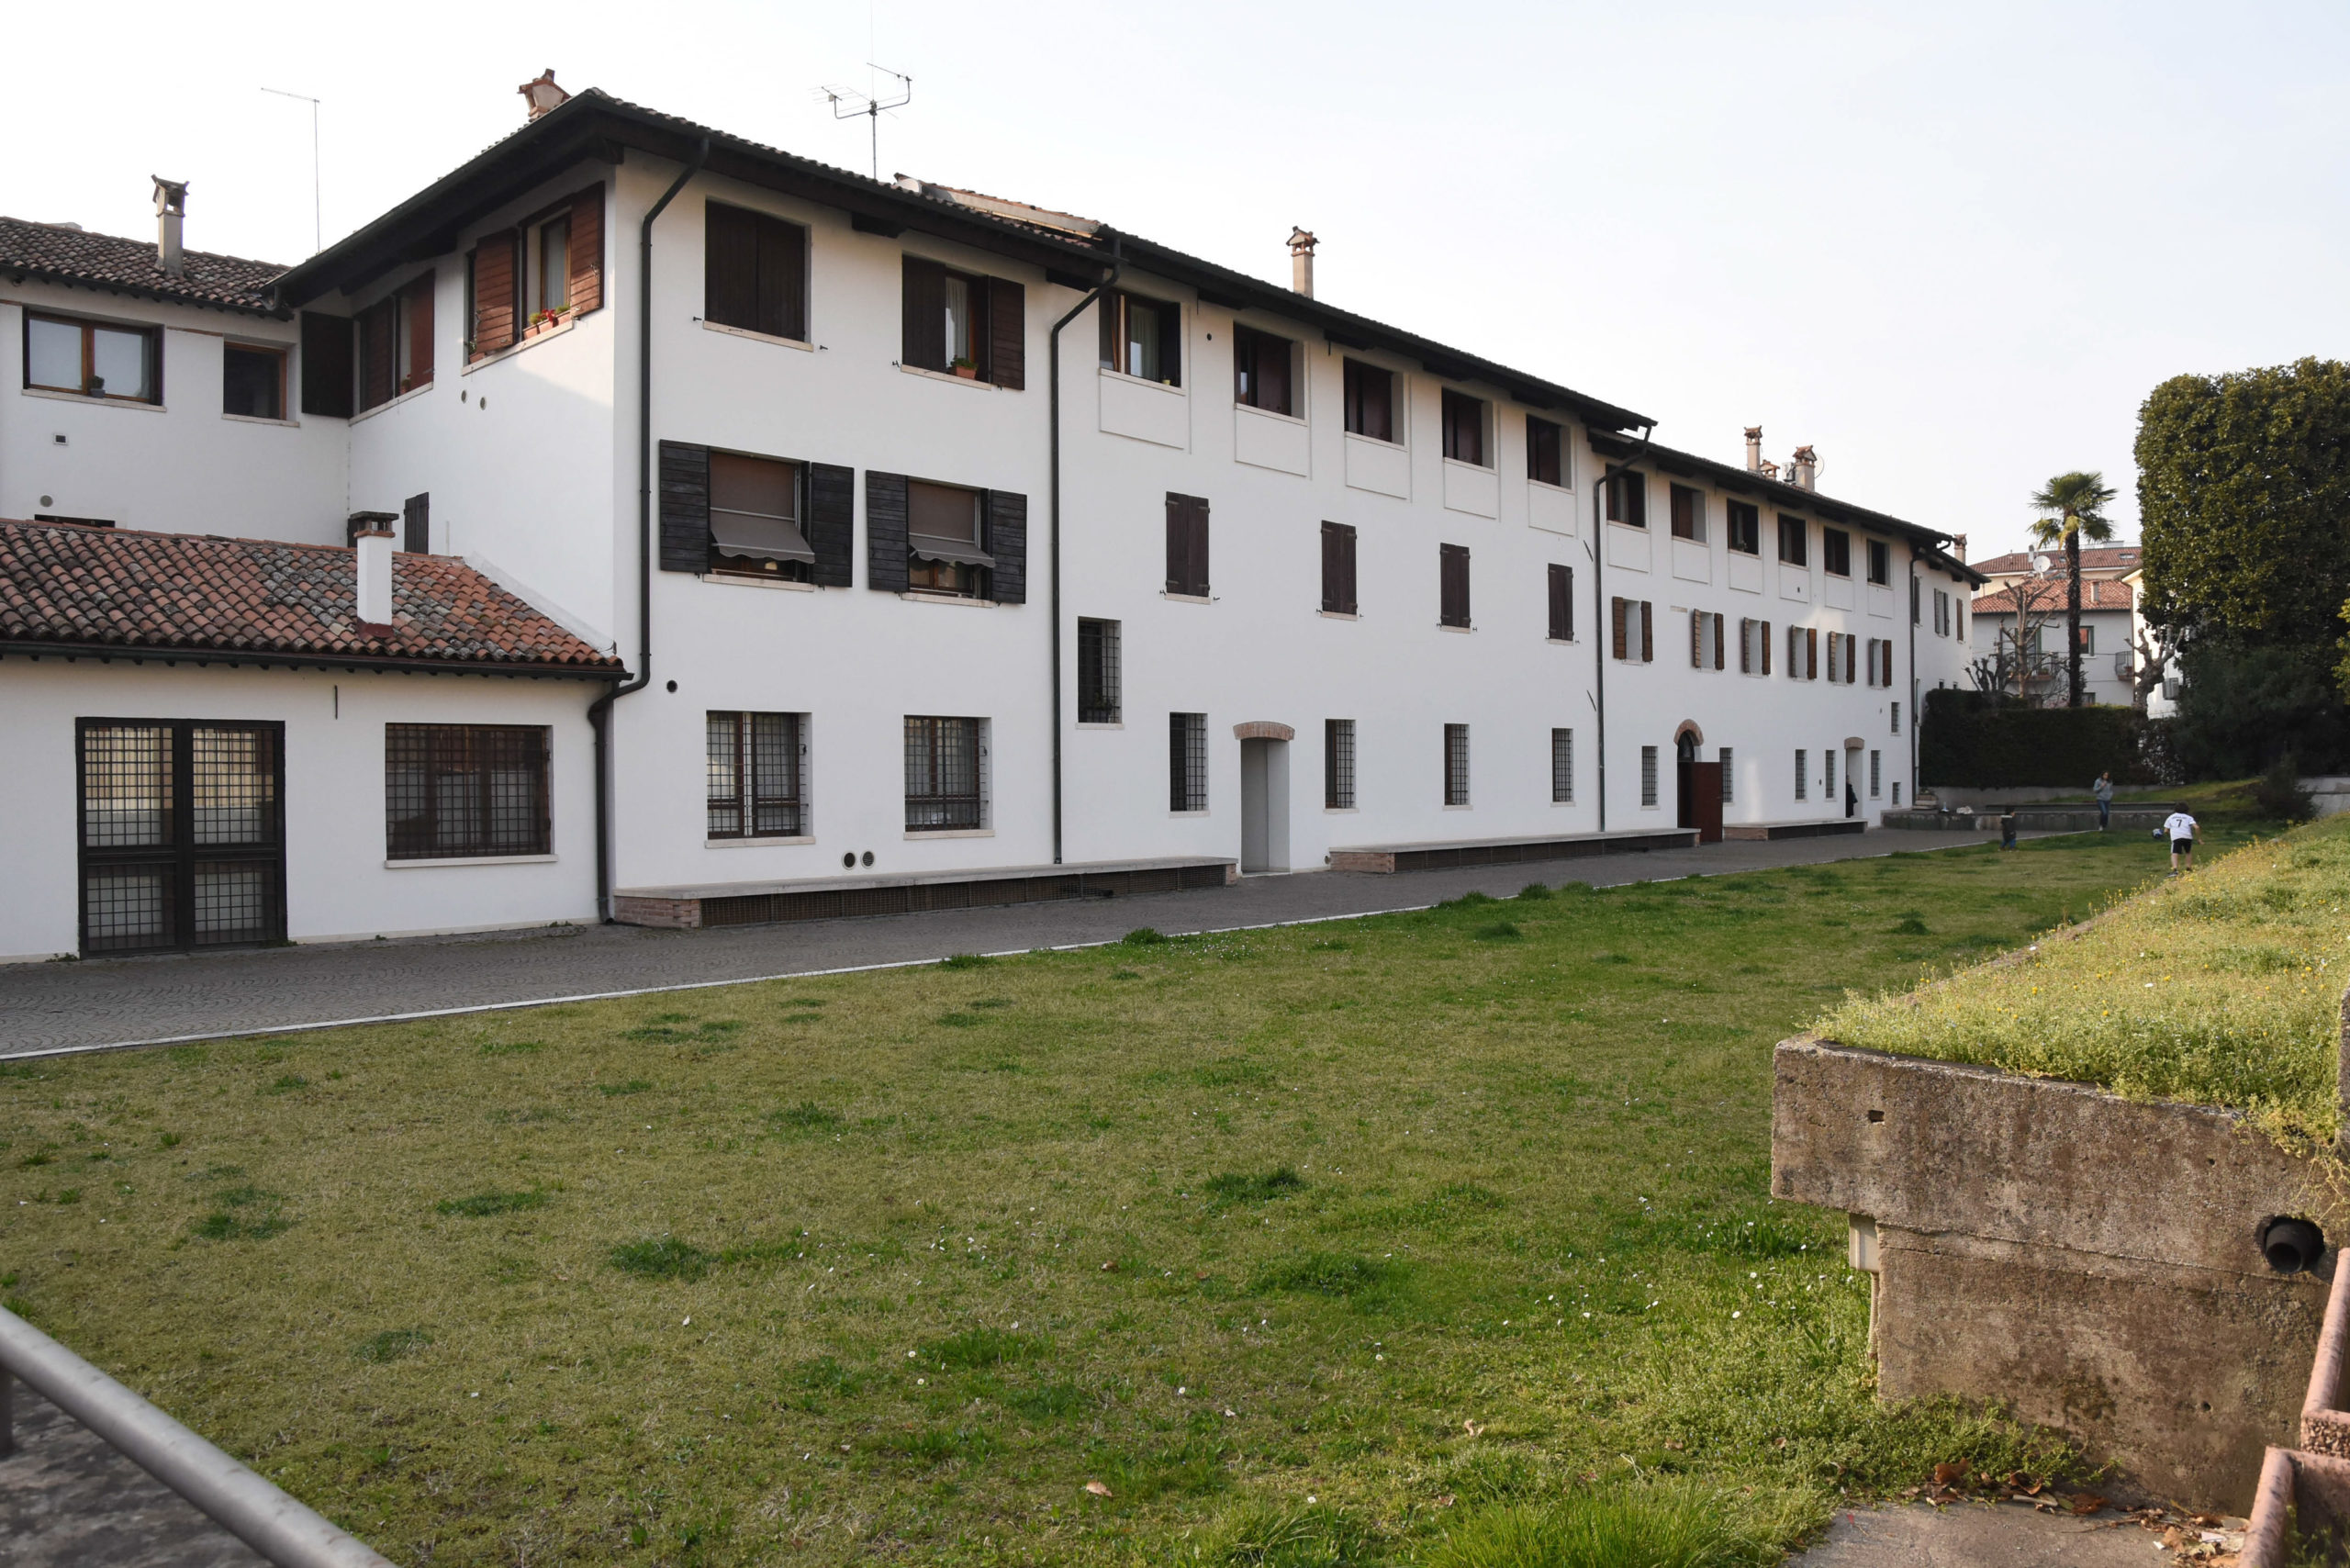 Corte dei Roda (Vicenza-Toniolo Ilaria-Colorfoto per ViPiù)